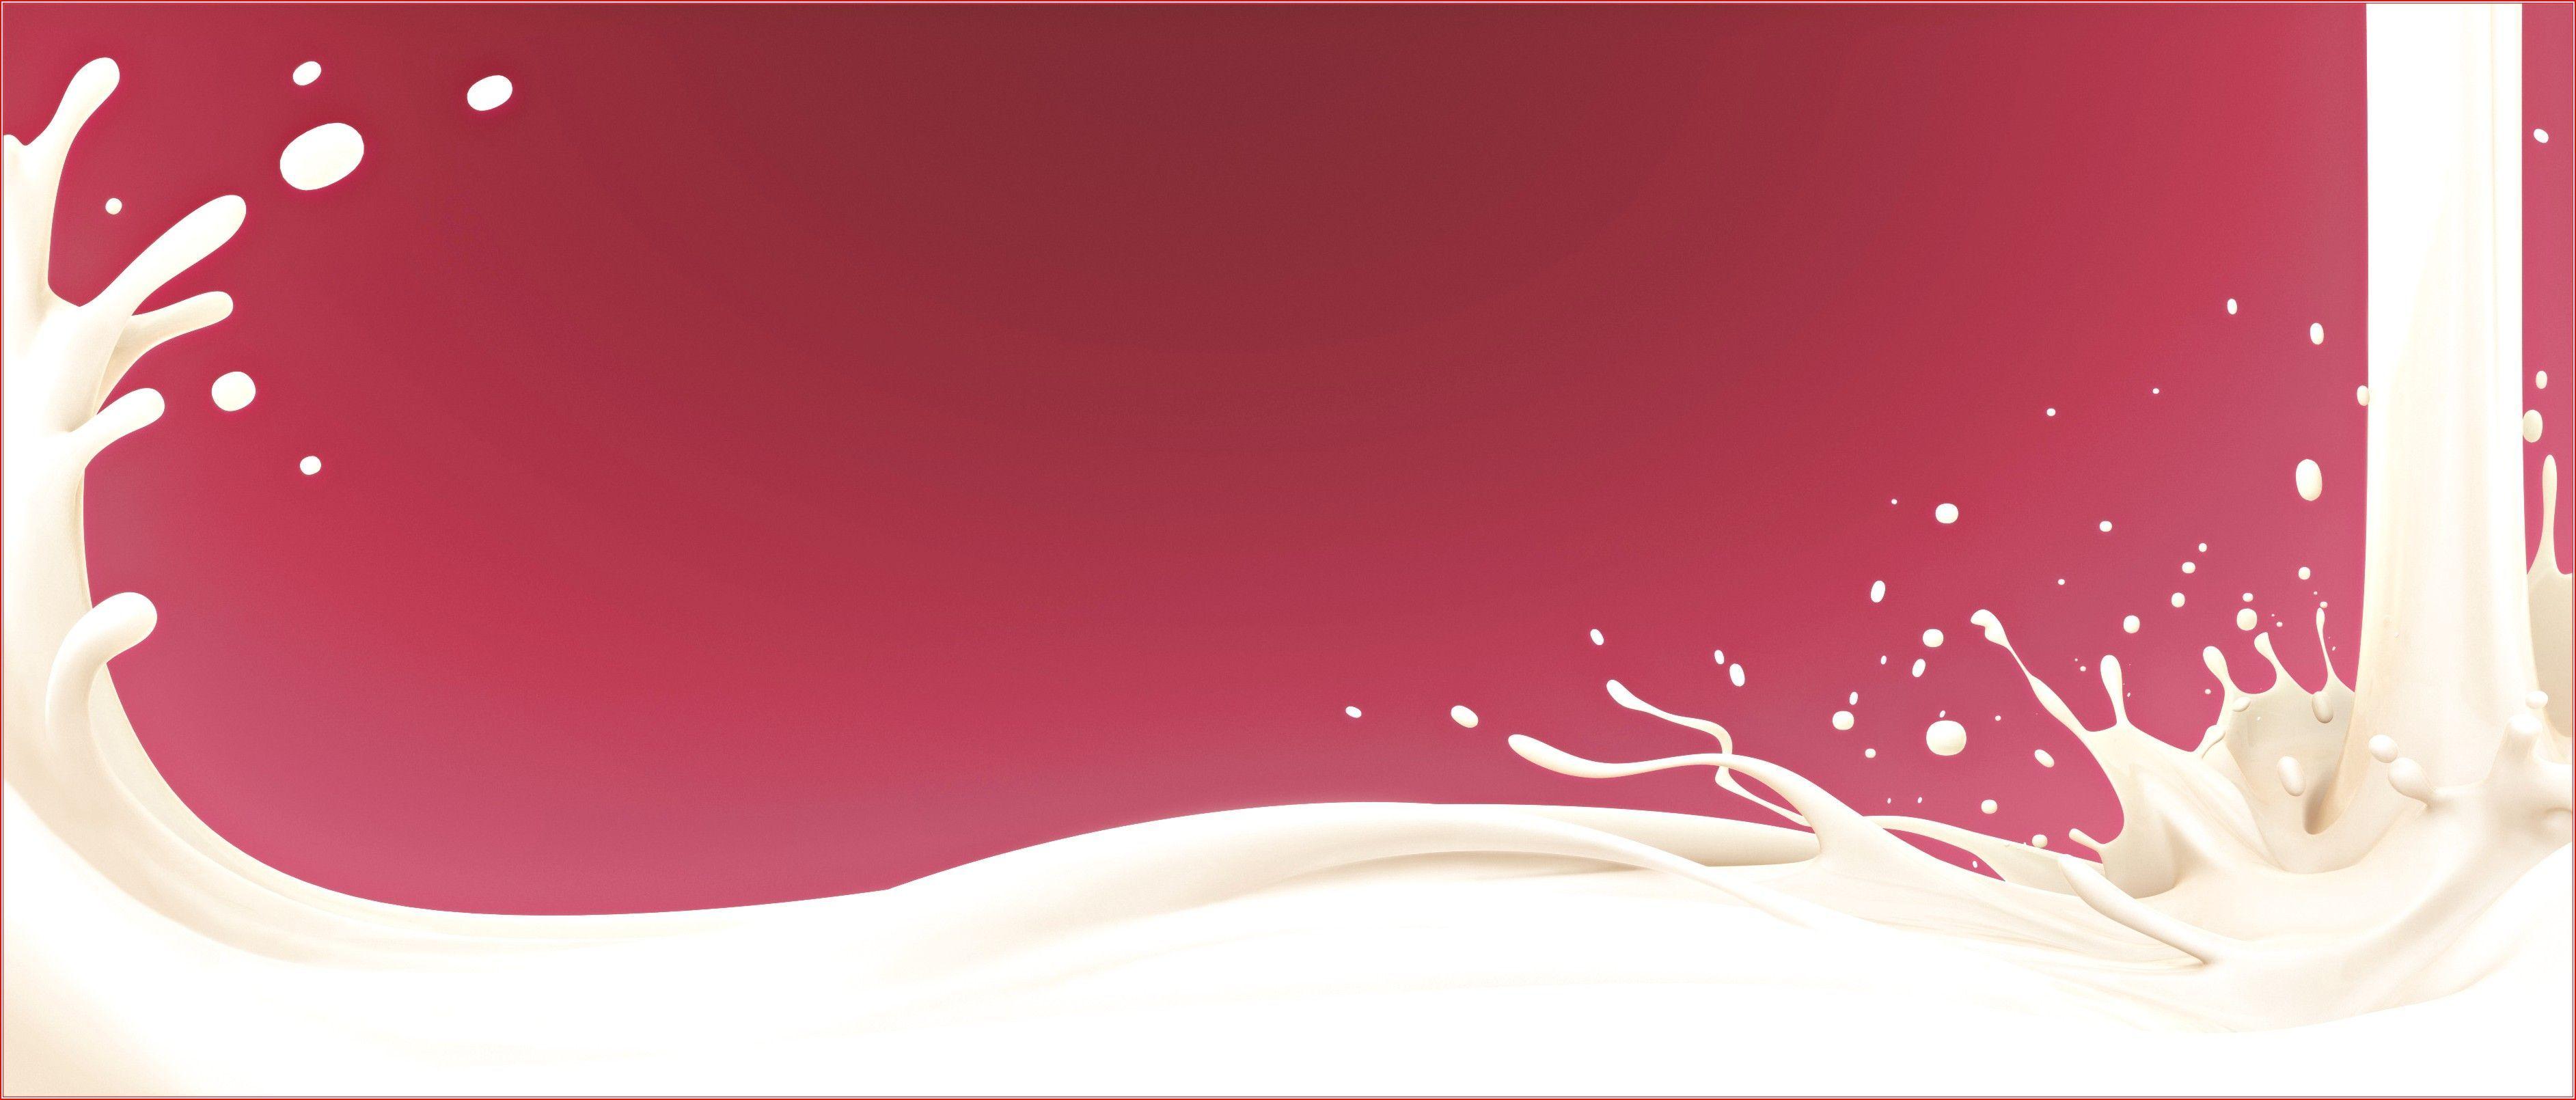 Milk HD Wallpapers - Top Những Hình Ảnh Đẹp